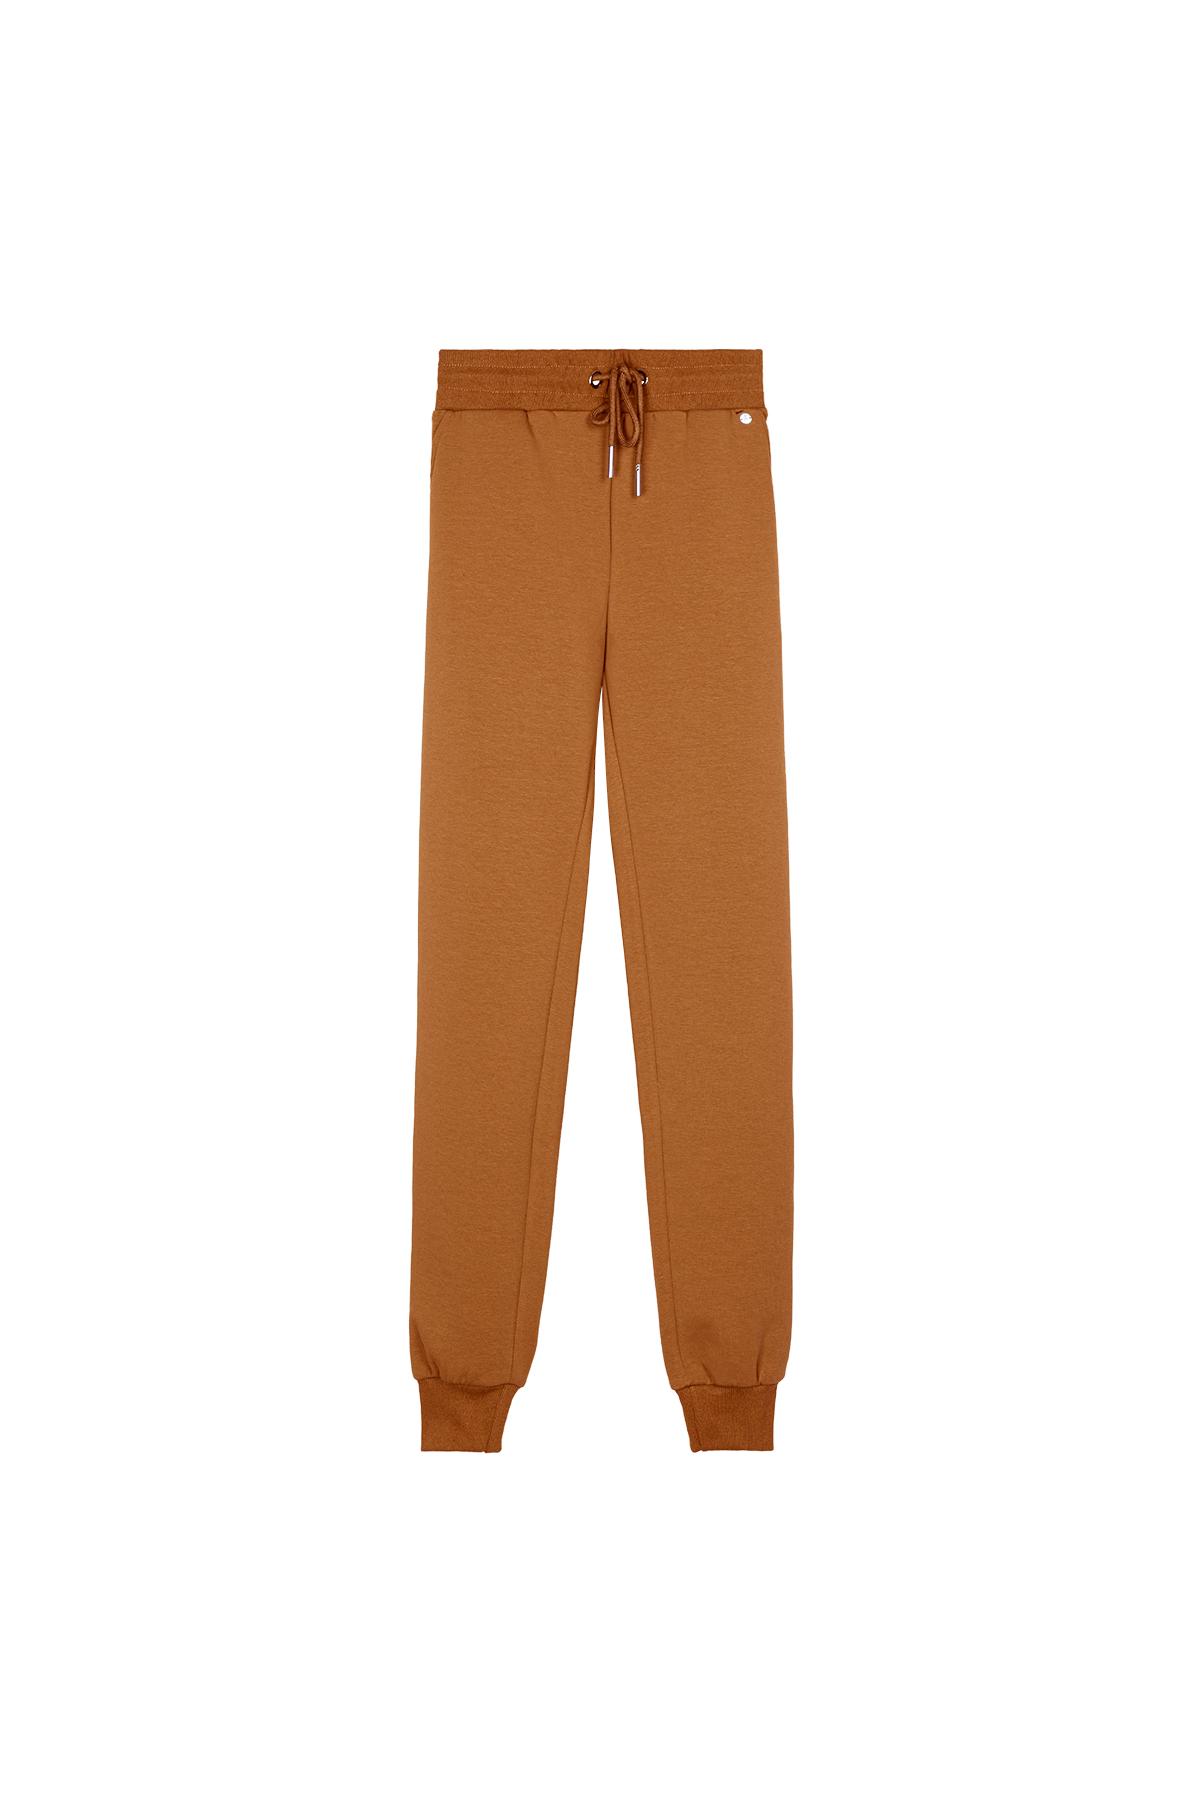 Pantalones cómodos estilo casual Naranja S